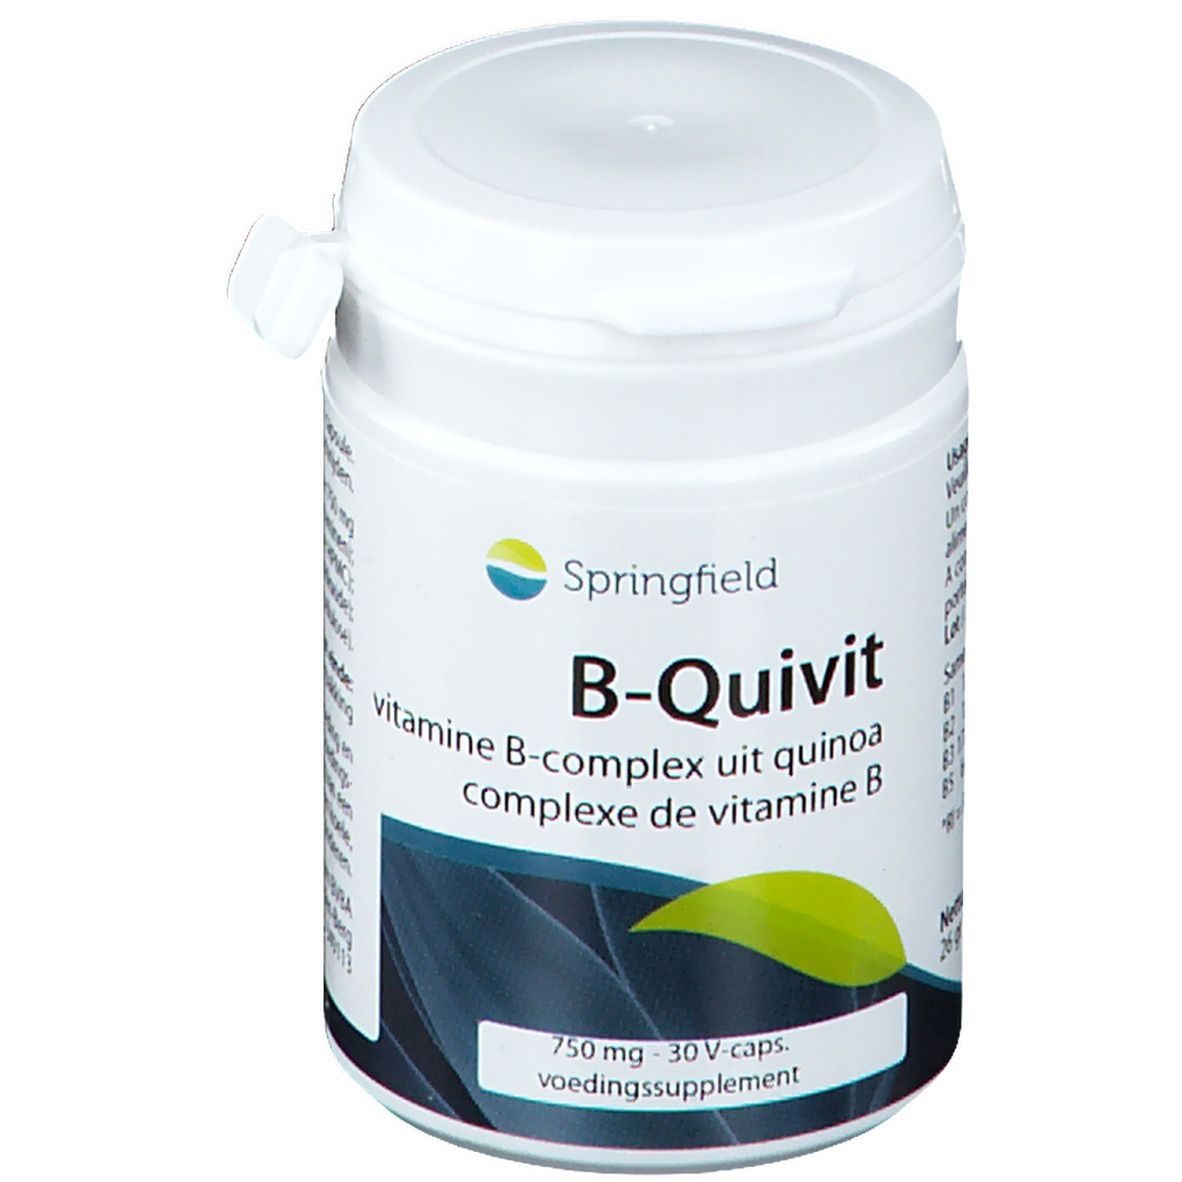 Image of Springfield B-Quivit Vitamin B-Komplex